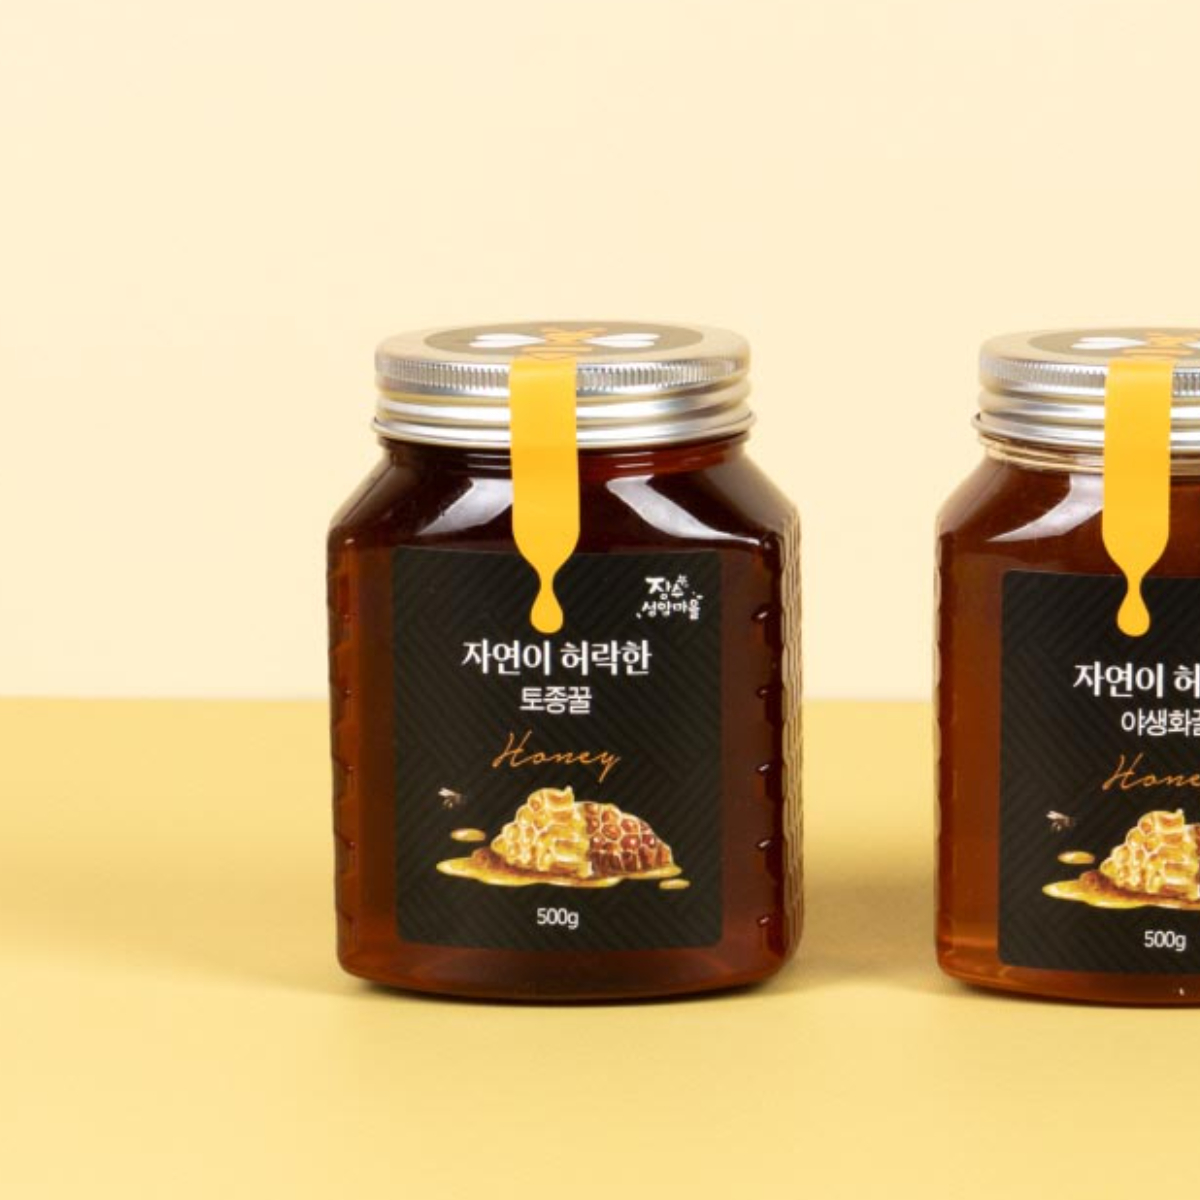 토종꿀 오백 그램이 담겨진 갈색 꿀병이 놓여져 있습니다.